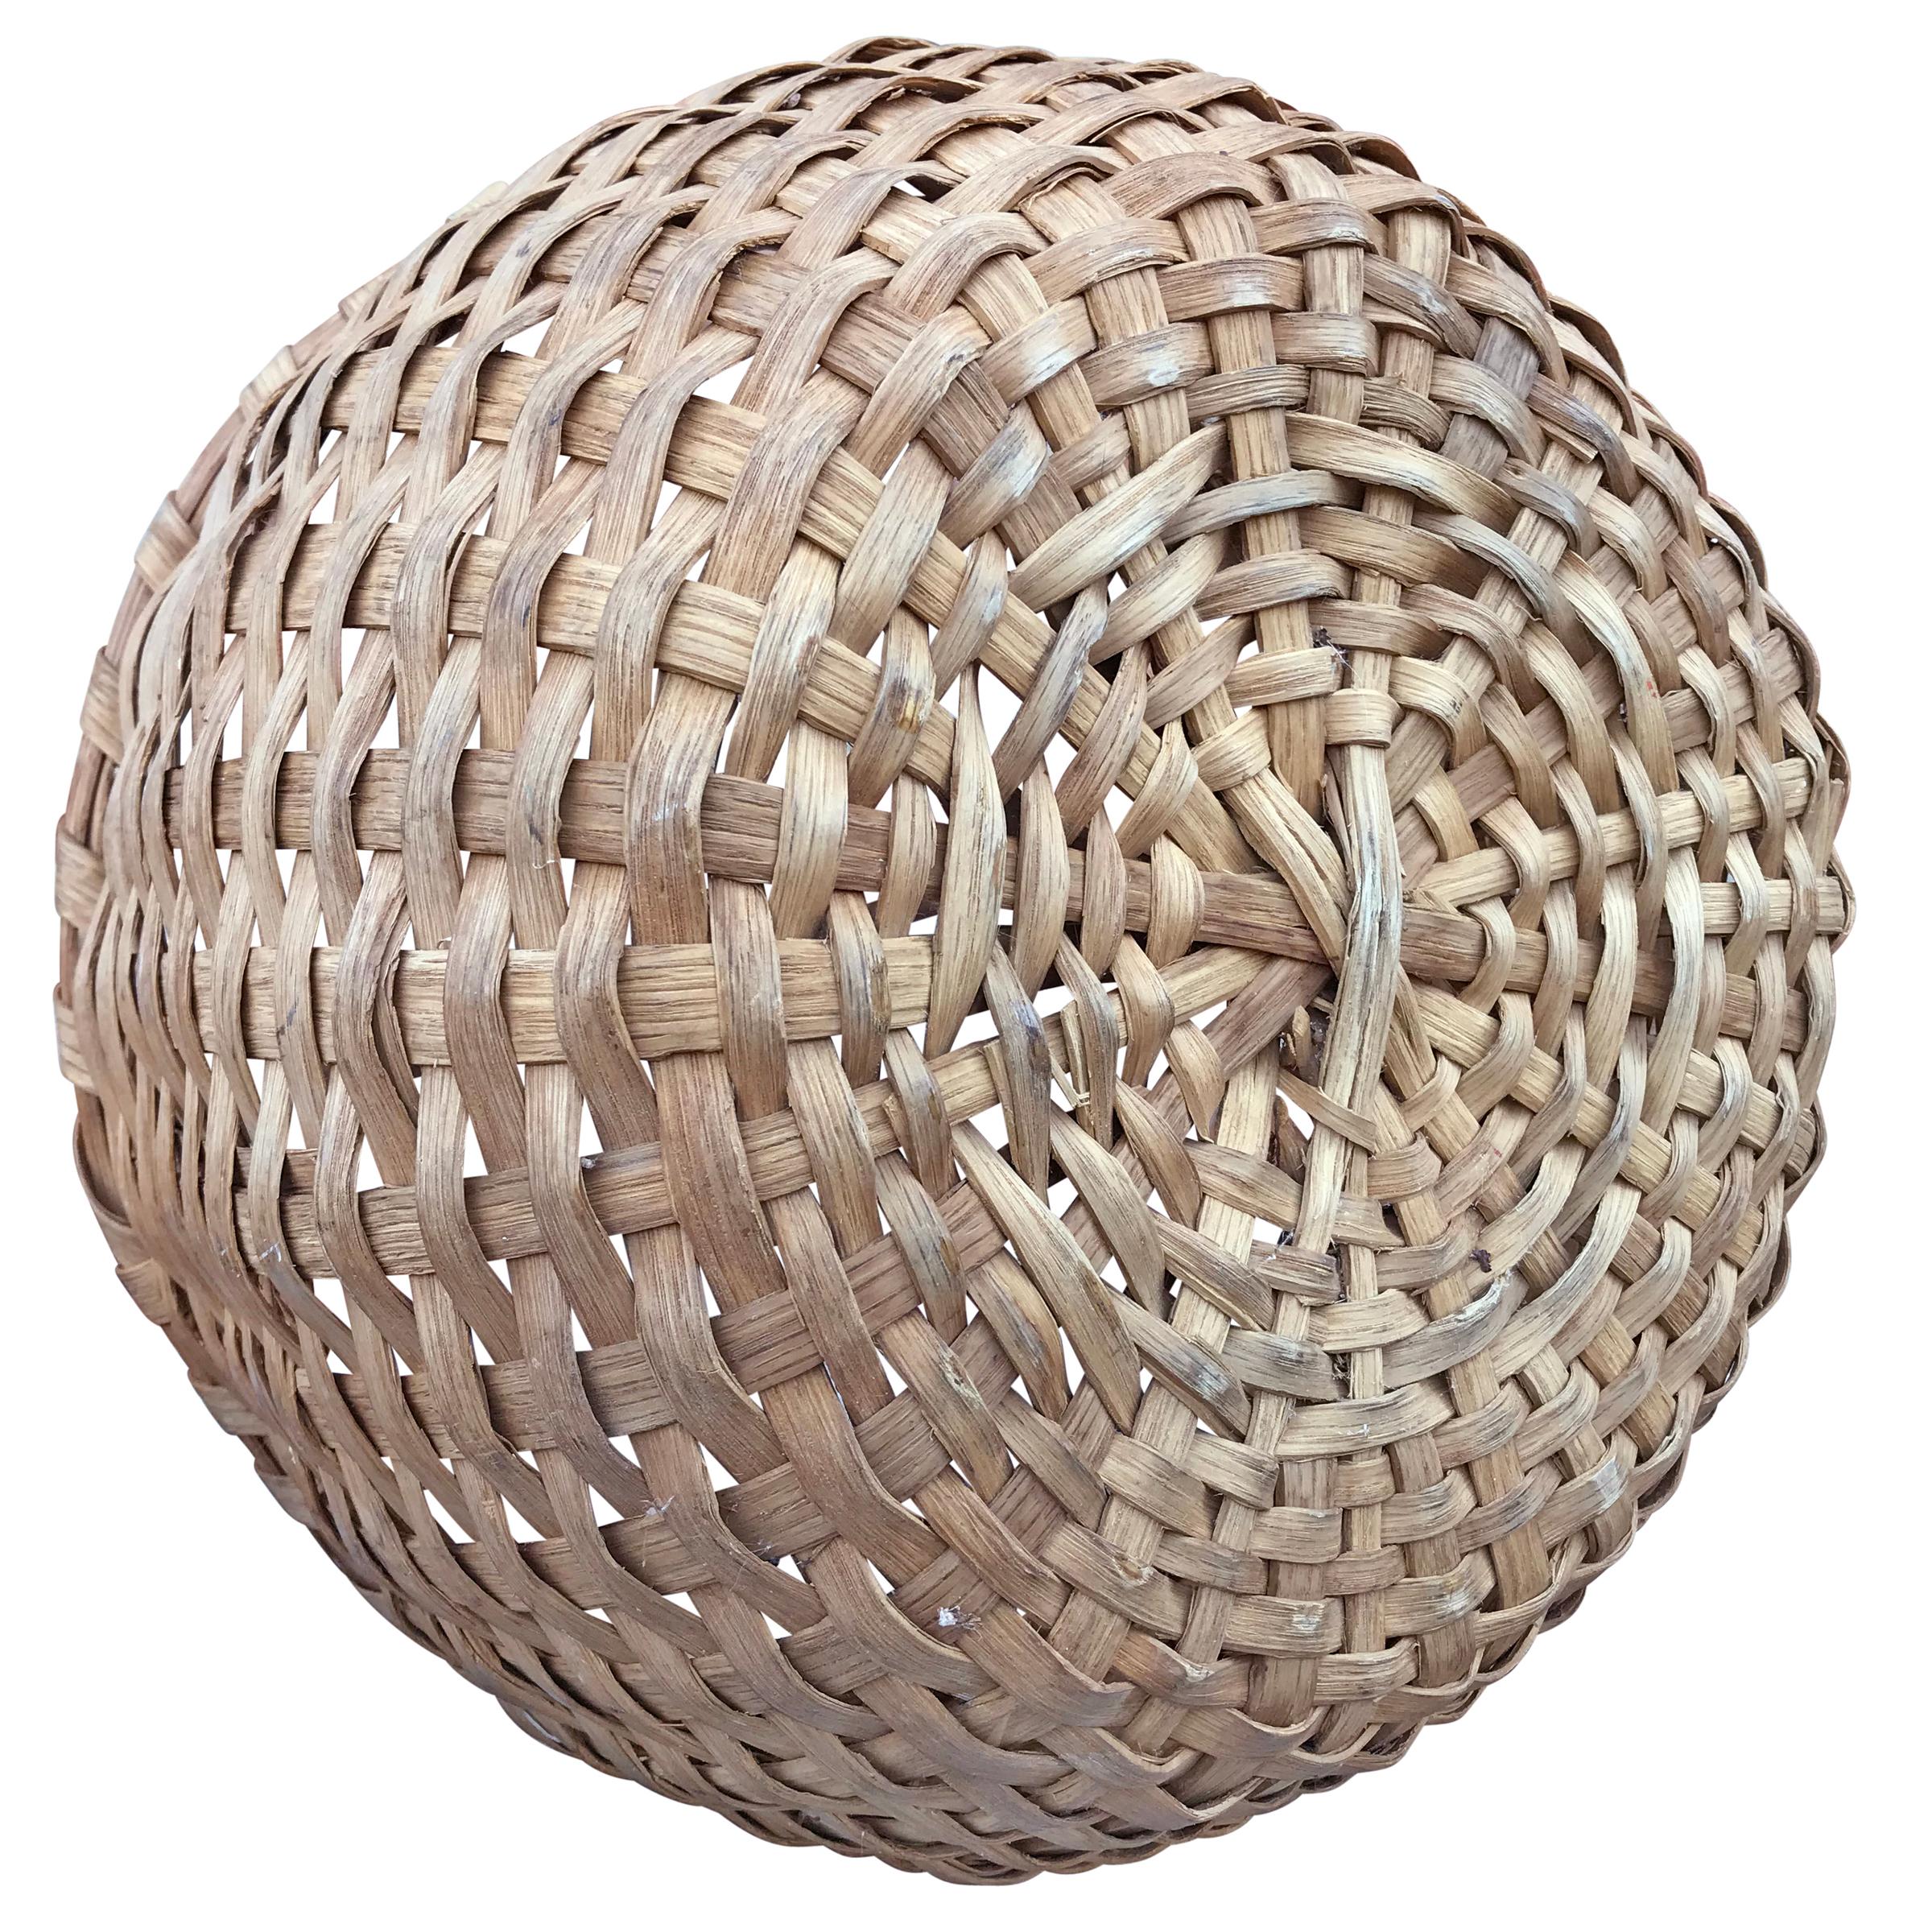 Hand-Woven Early 20th Century Oak Splint Basket For Sale